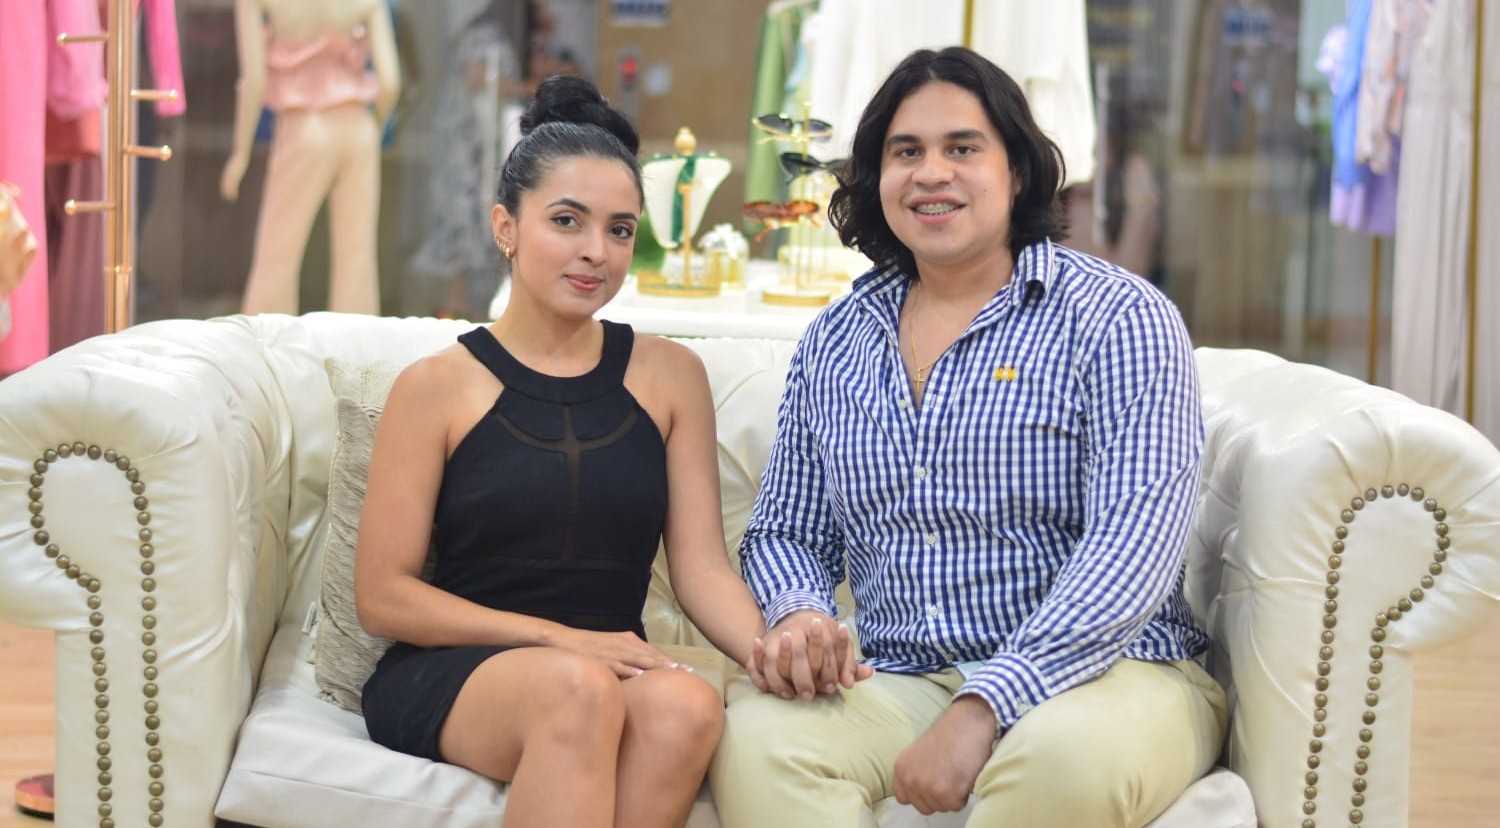 La pareja de jóvenes tolimenses que triunfa con su marca de ropa exclusiva  | El Cronista